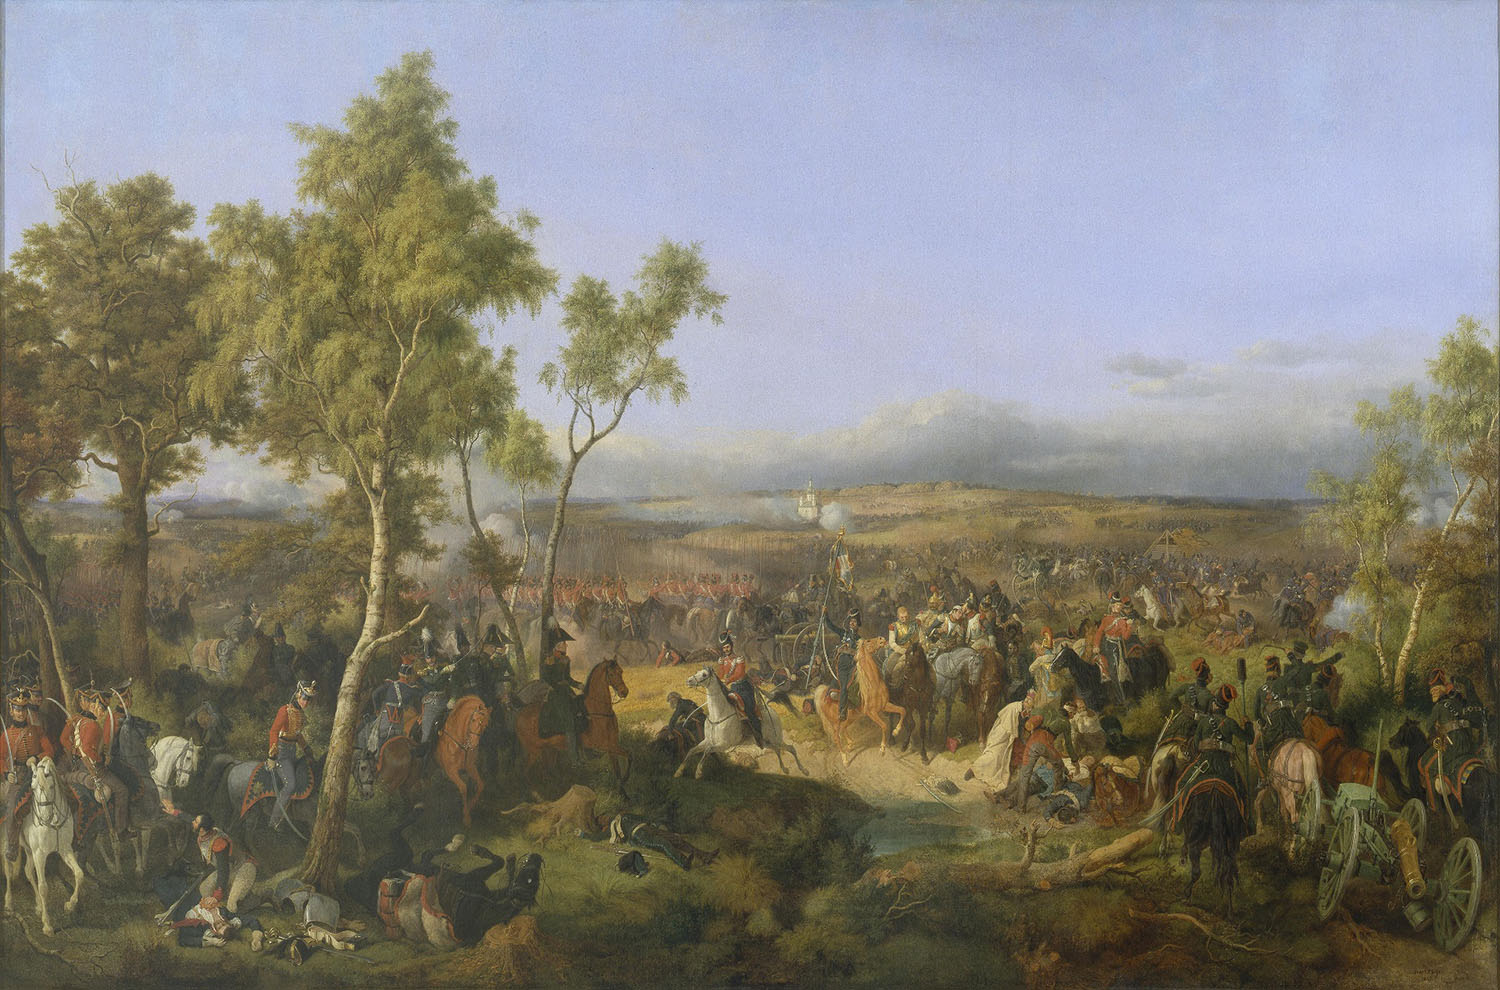 Петер фон Хесс (Гесс). "Сражение при Тарутине 6 (18) октября 1812 года". 1847. Эрмитаж, Санкт-Петербург.